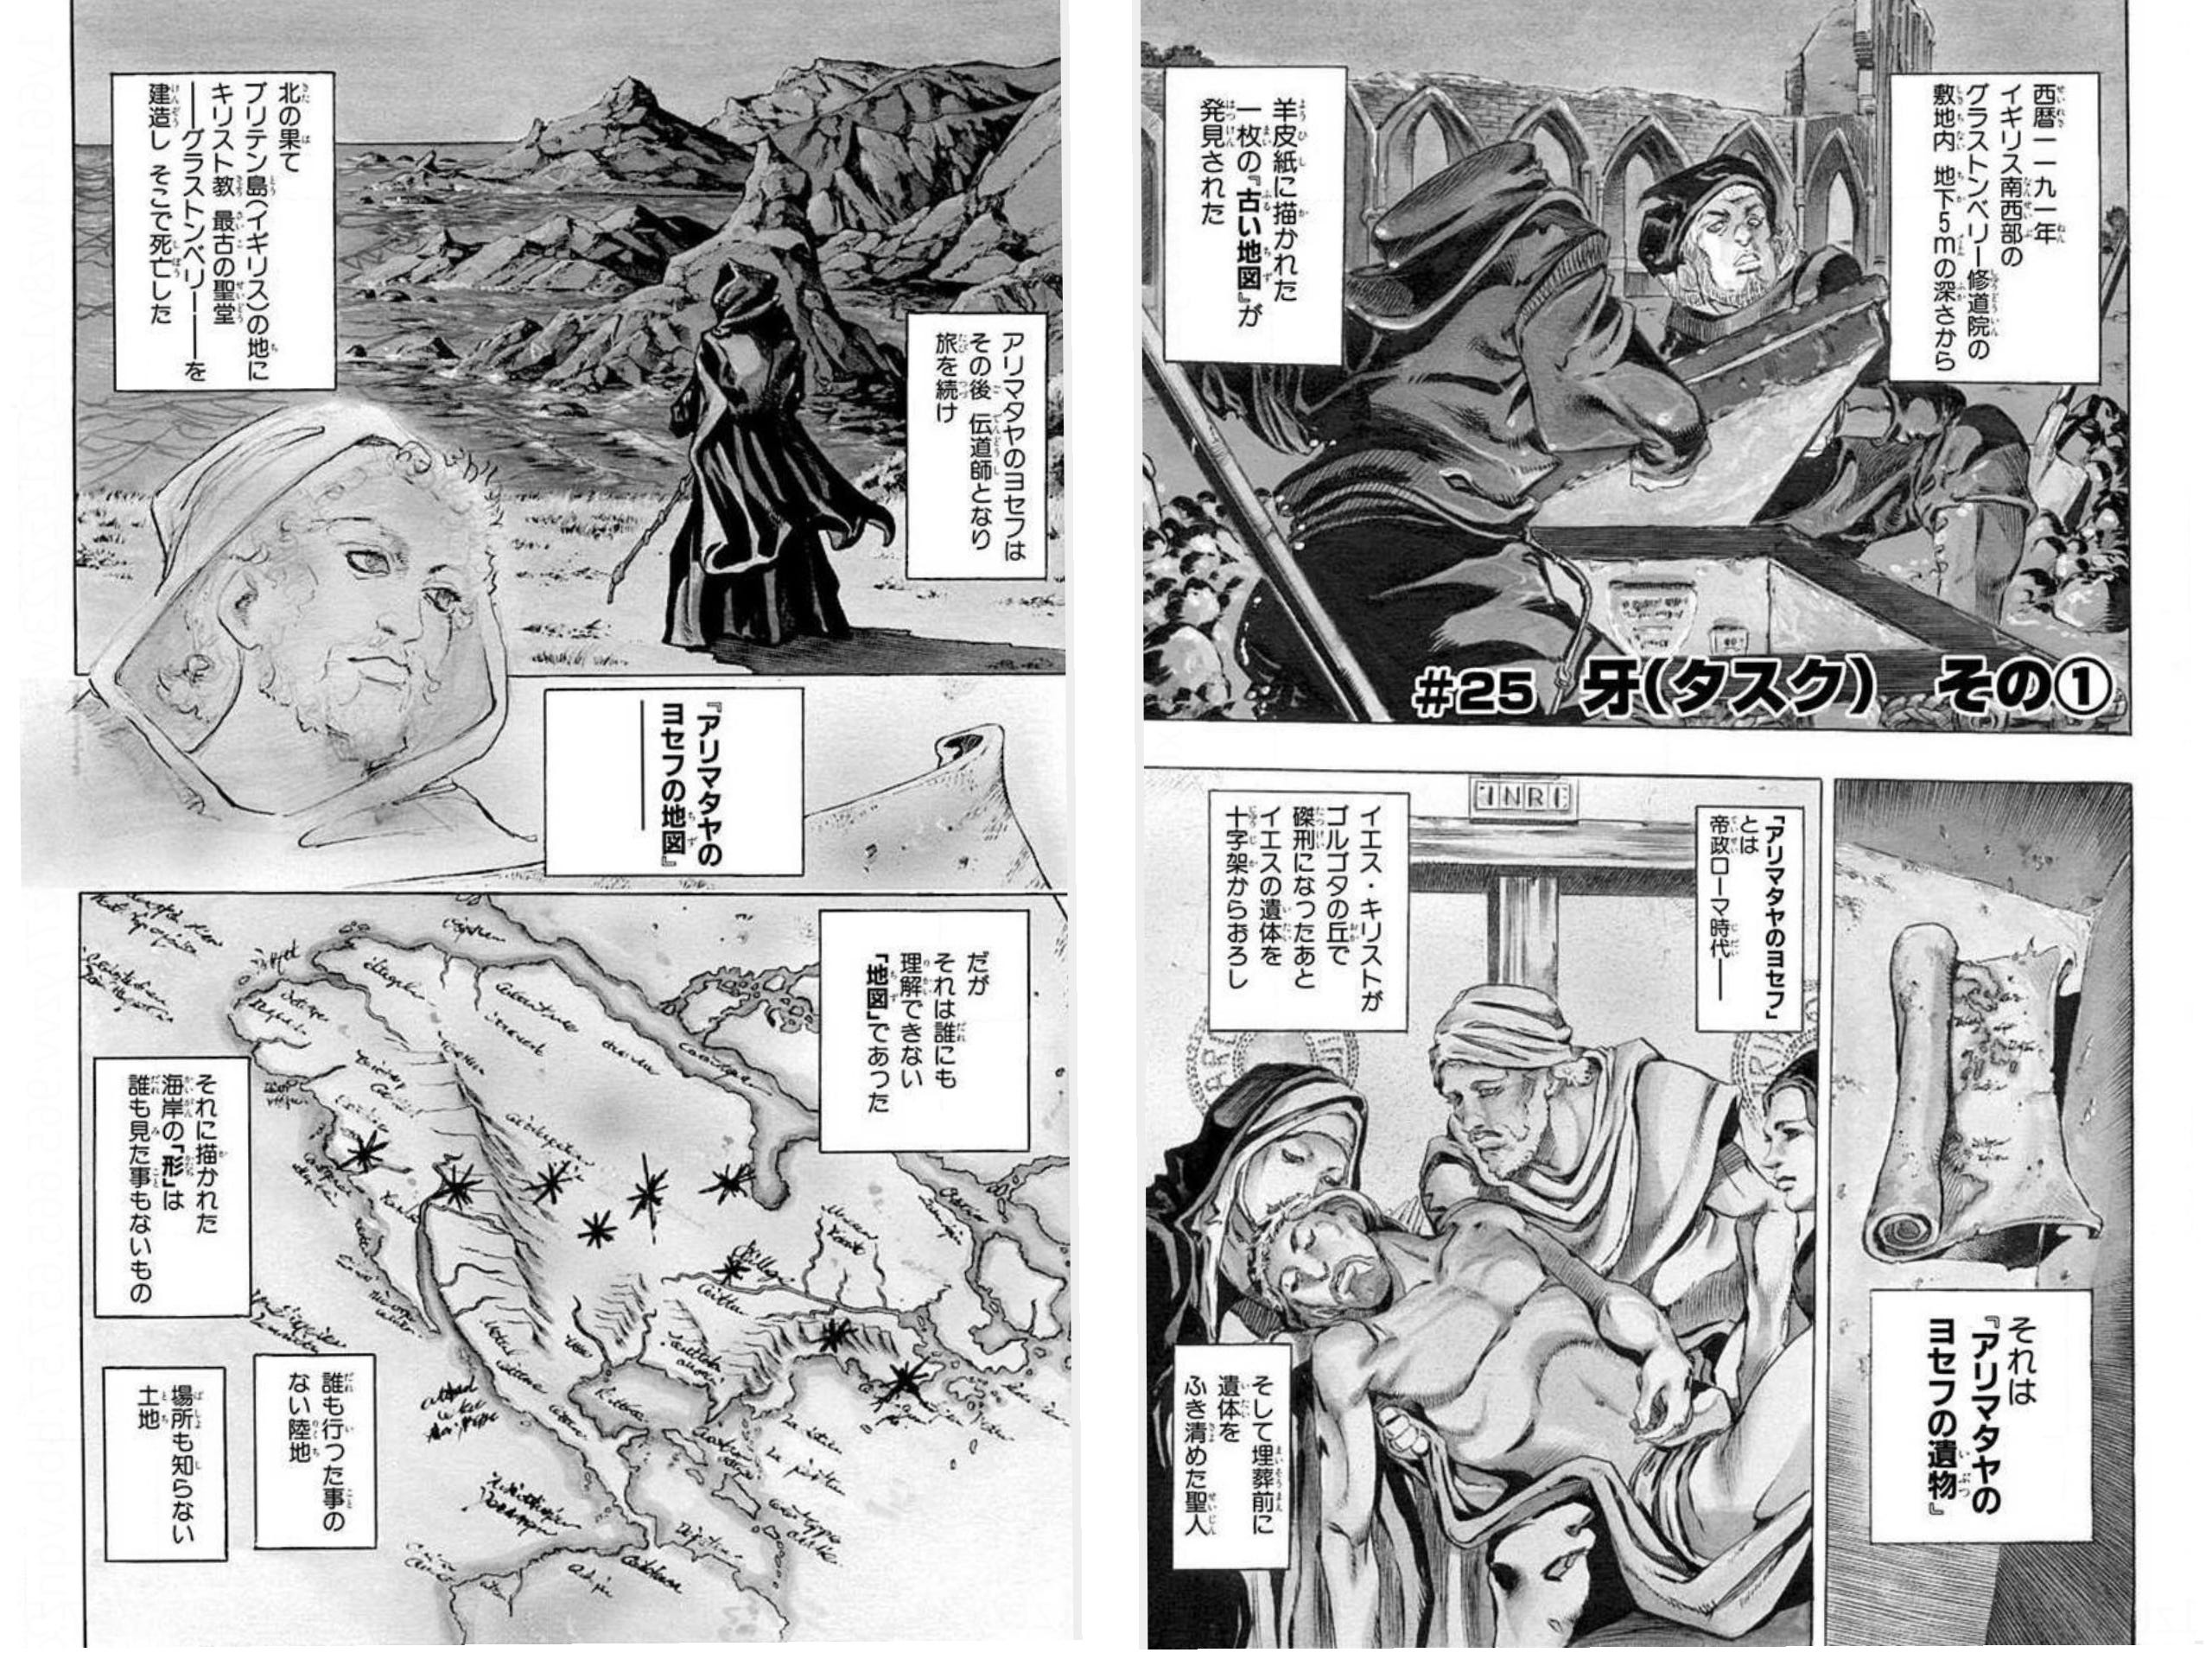 人間讃歌の巡礼 ジョジョの奇妙な冒険 スティール ボール ラン 仏教美術のレポートでジョジョのエッセイを書きました By Nakamura Yuko Medium